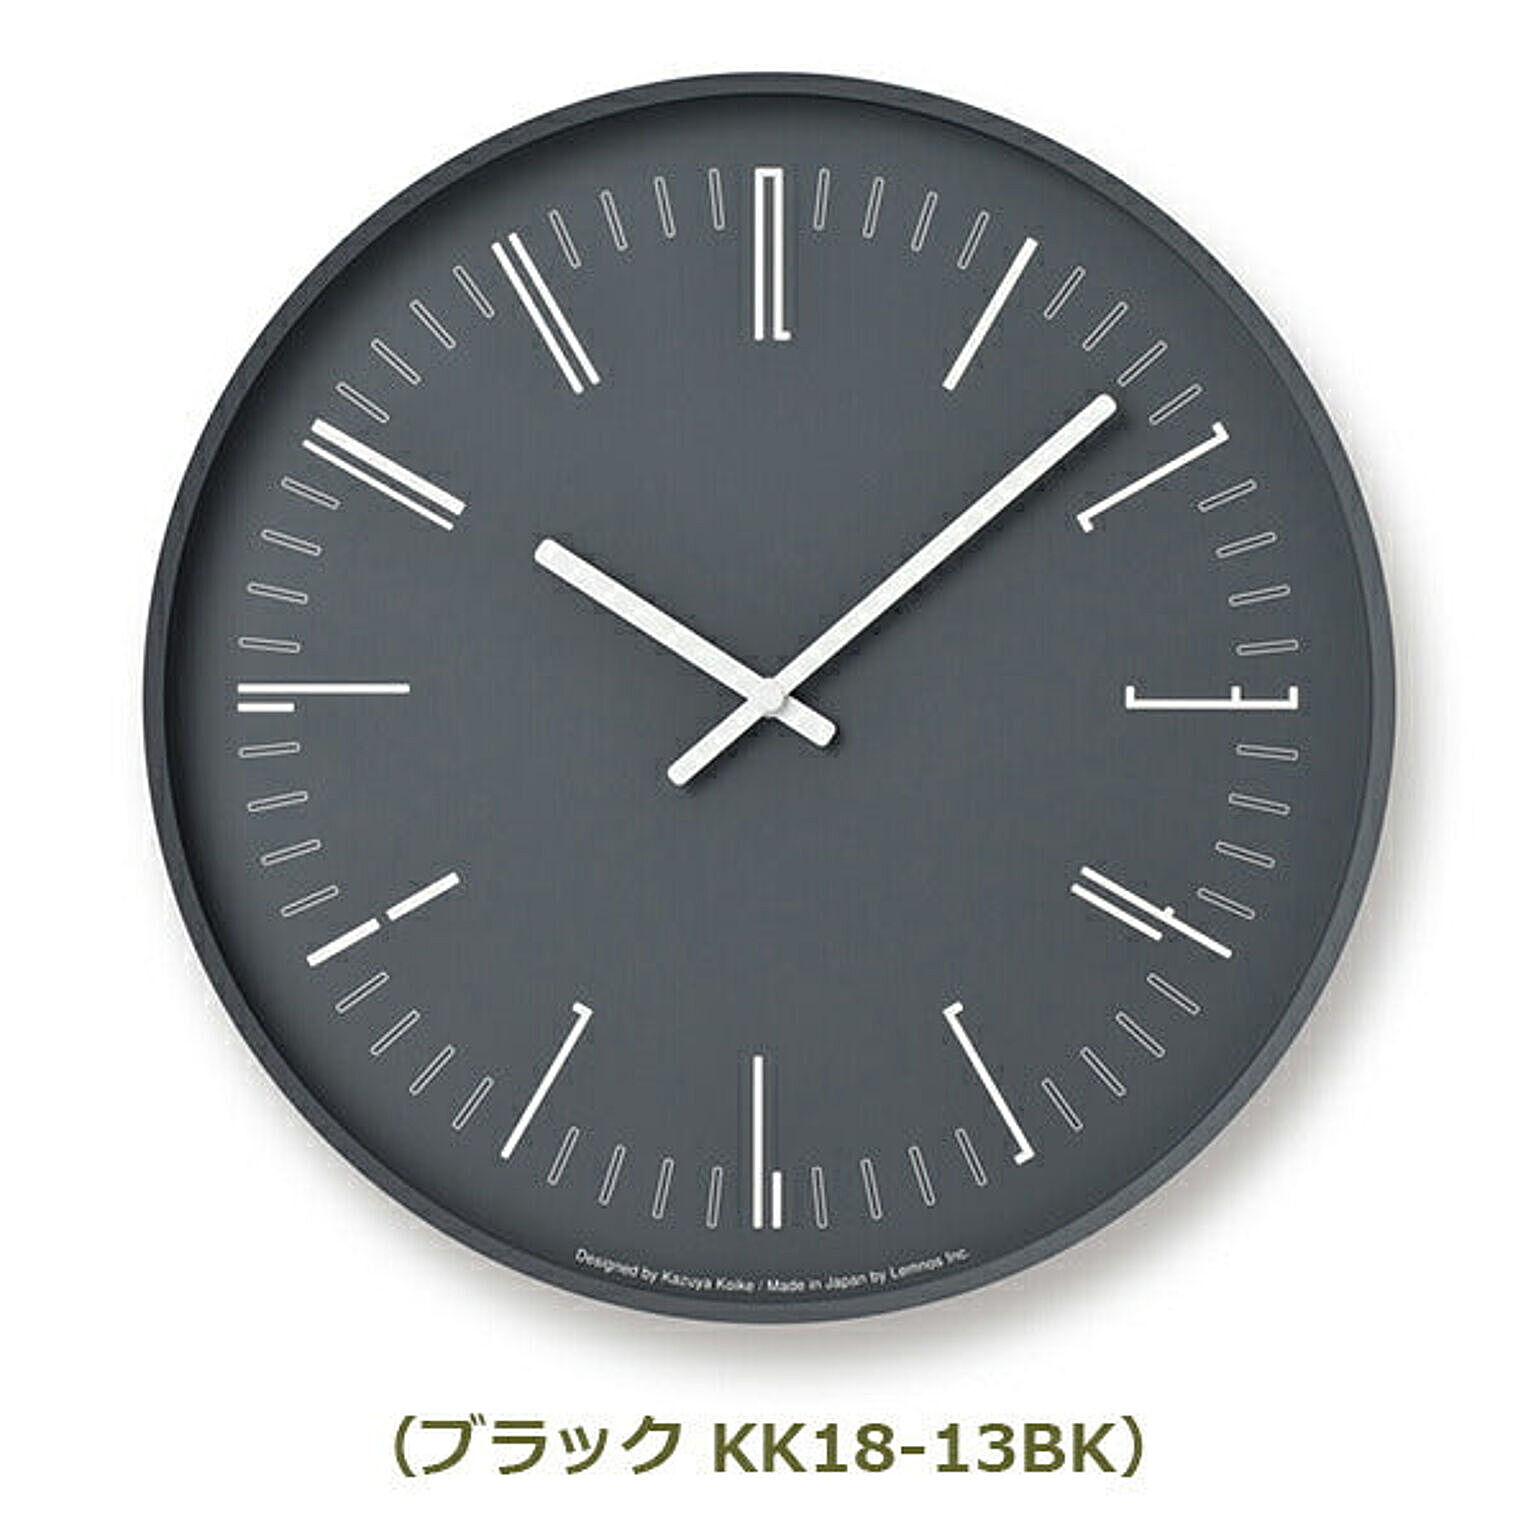 Drow wall clock ドロー ウォール クロック KK18-13 メトロポリタンギャラリー Lemnos